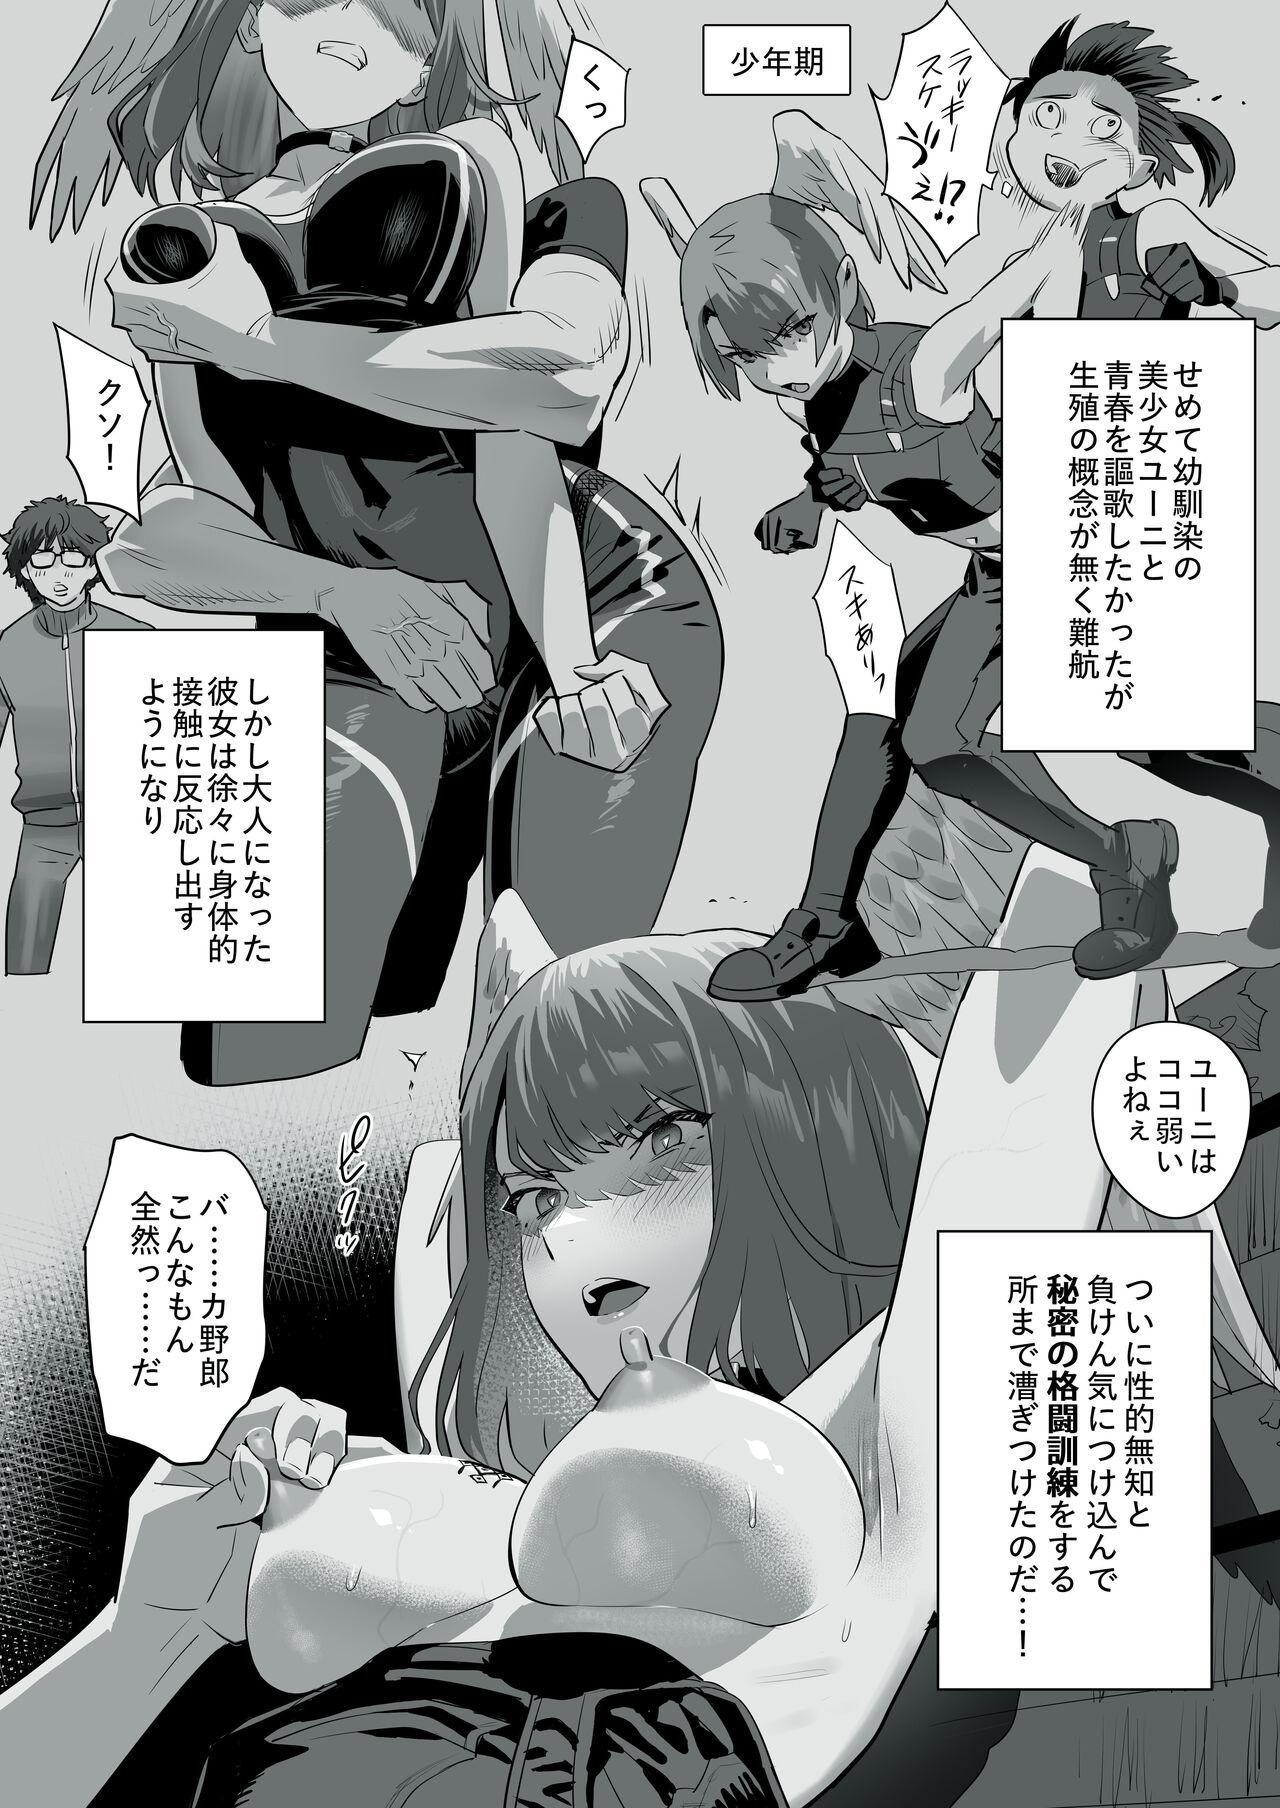 Storyline Tensei-saki ga Xenoblade 3 Manga - Xenoblade Xenoblade chronicles 3 Pov Blow Job - Page 2